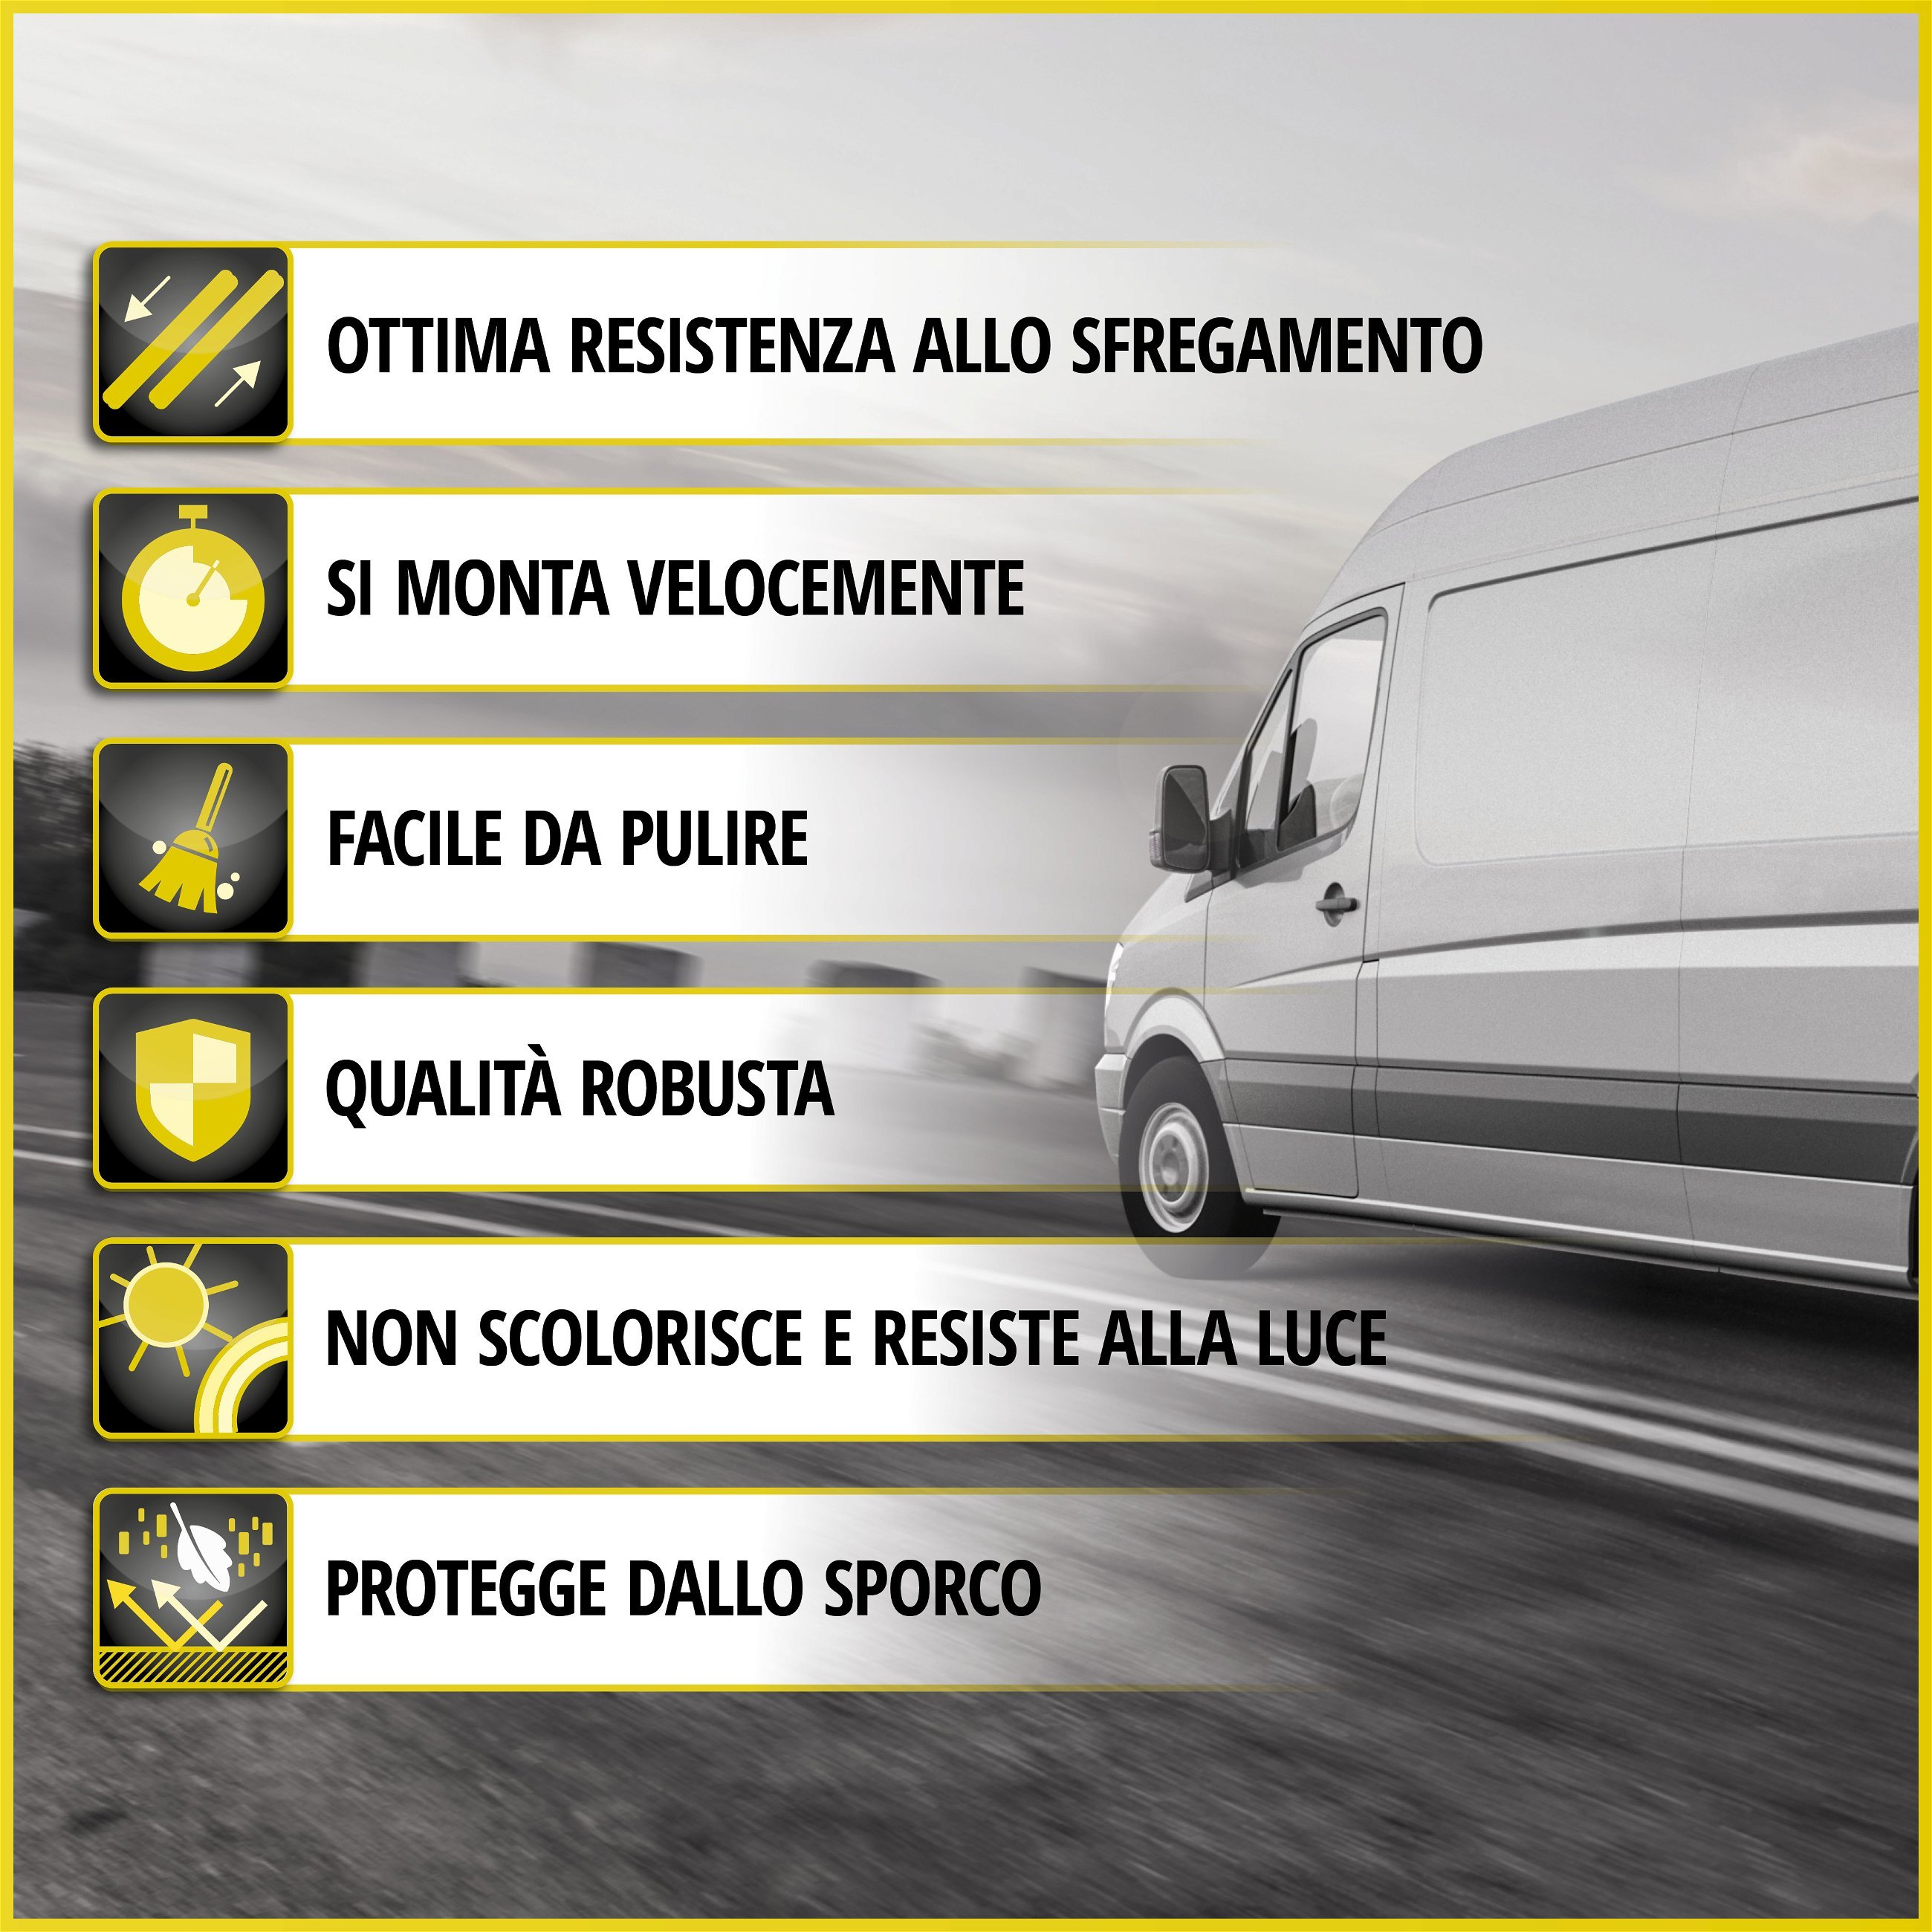 Premium Coprisedili per Fiat Doblo 11/2000-Oggi, 2 coprisedili singoli anteriori